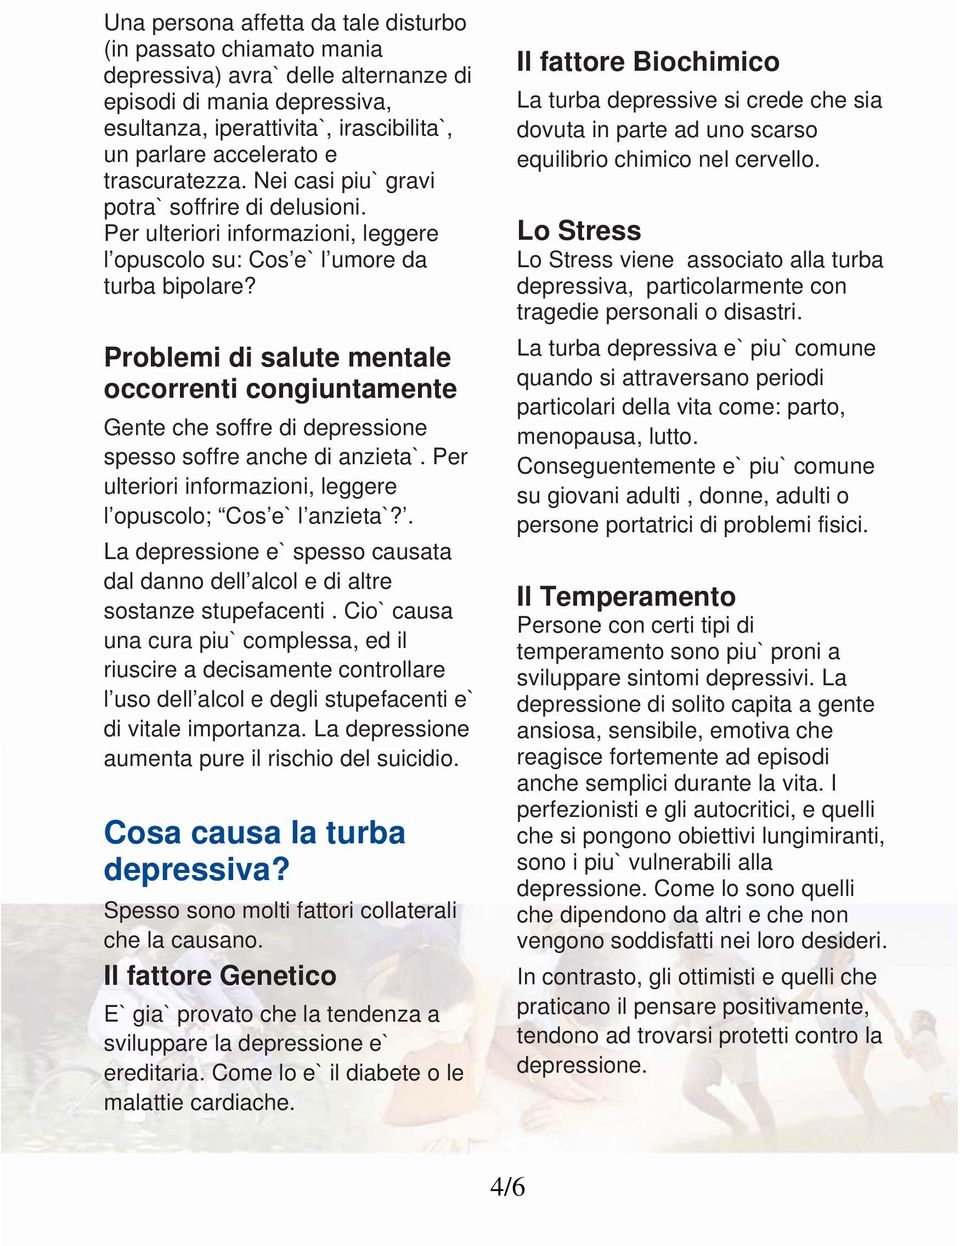 Problemi di salute mentale occorrenti congiuntamente Gente che soffre di depressione spesso soffre anche di anzieta`. Per ulteriori informazioni, leggere l opuscolo; Cos e` l anzieta`?